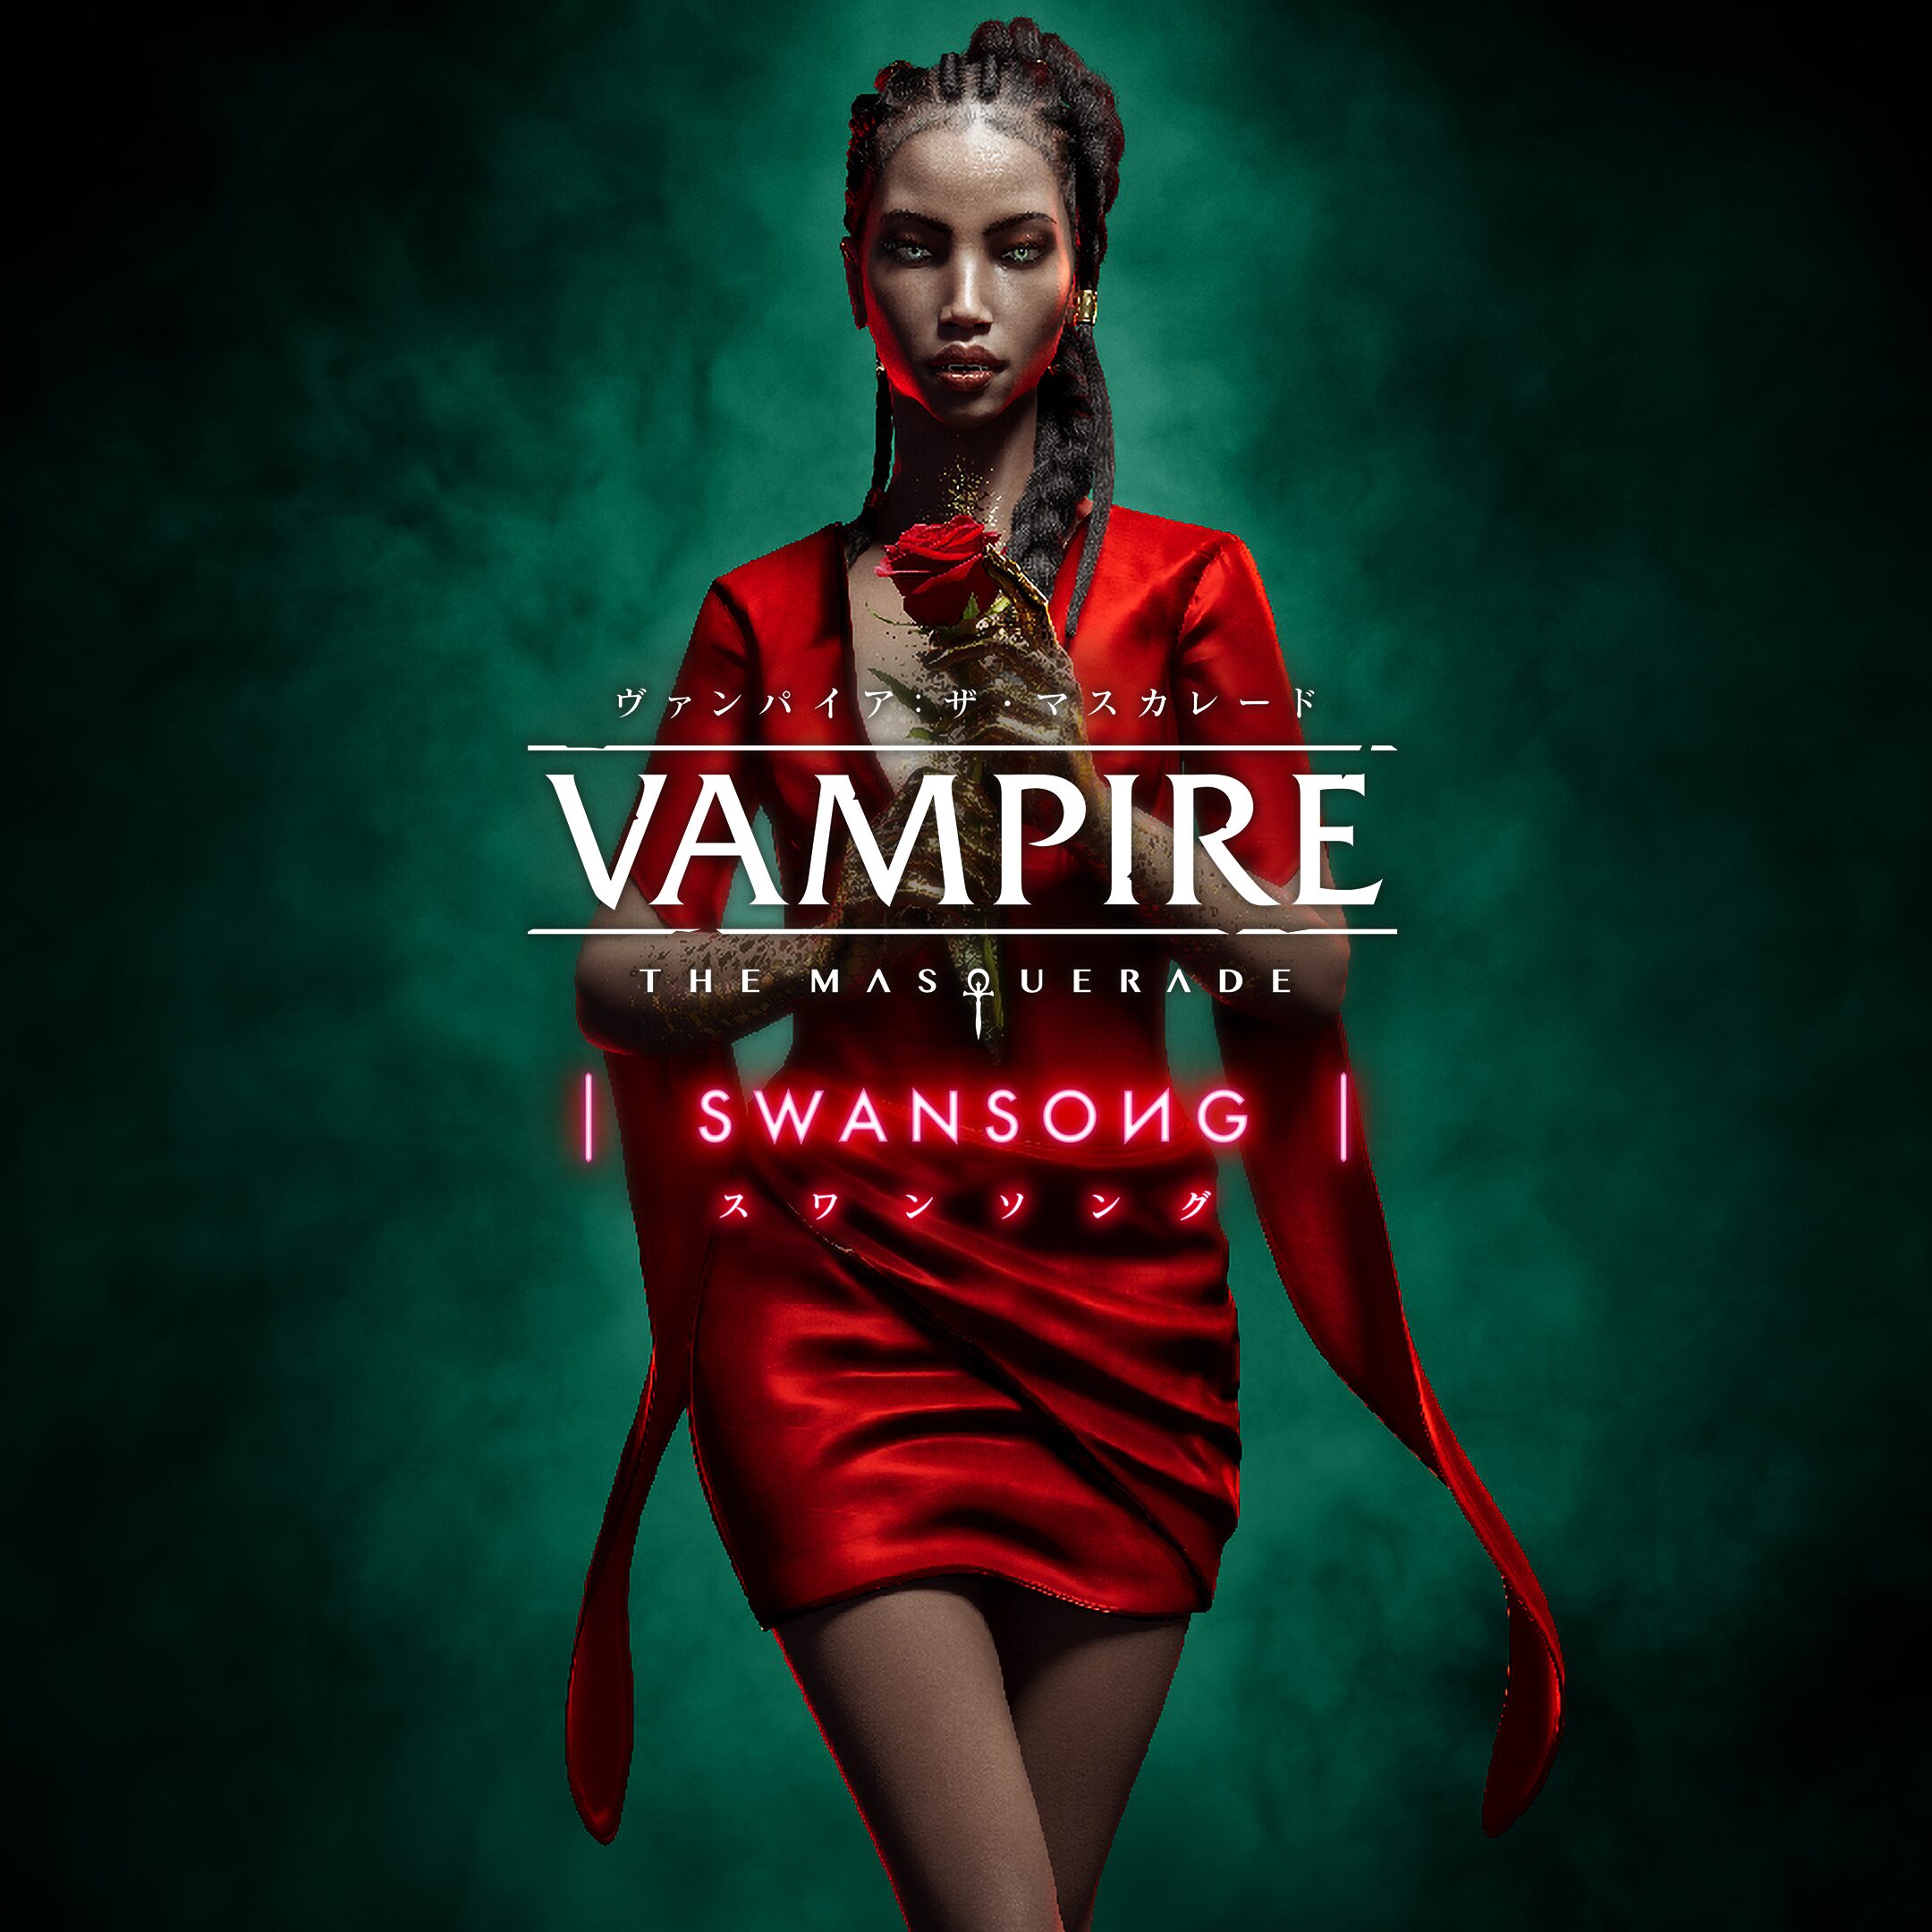 Vampire: The Masquerade Swansong - Launch